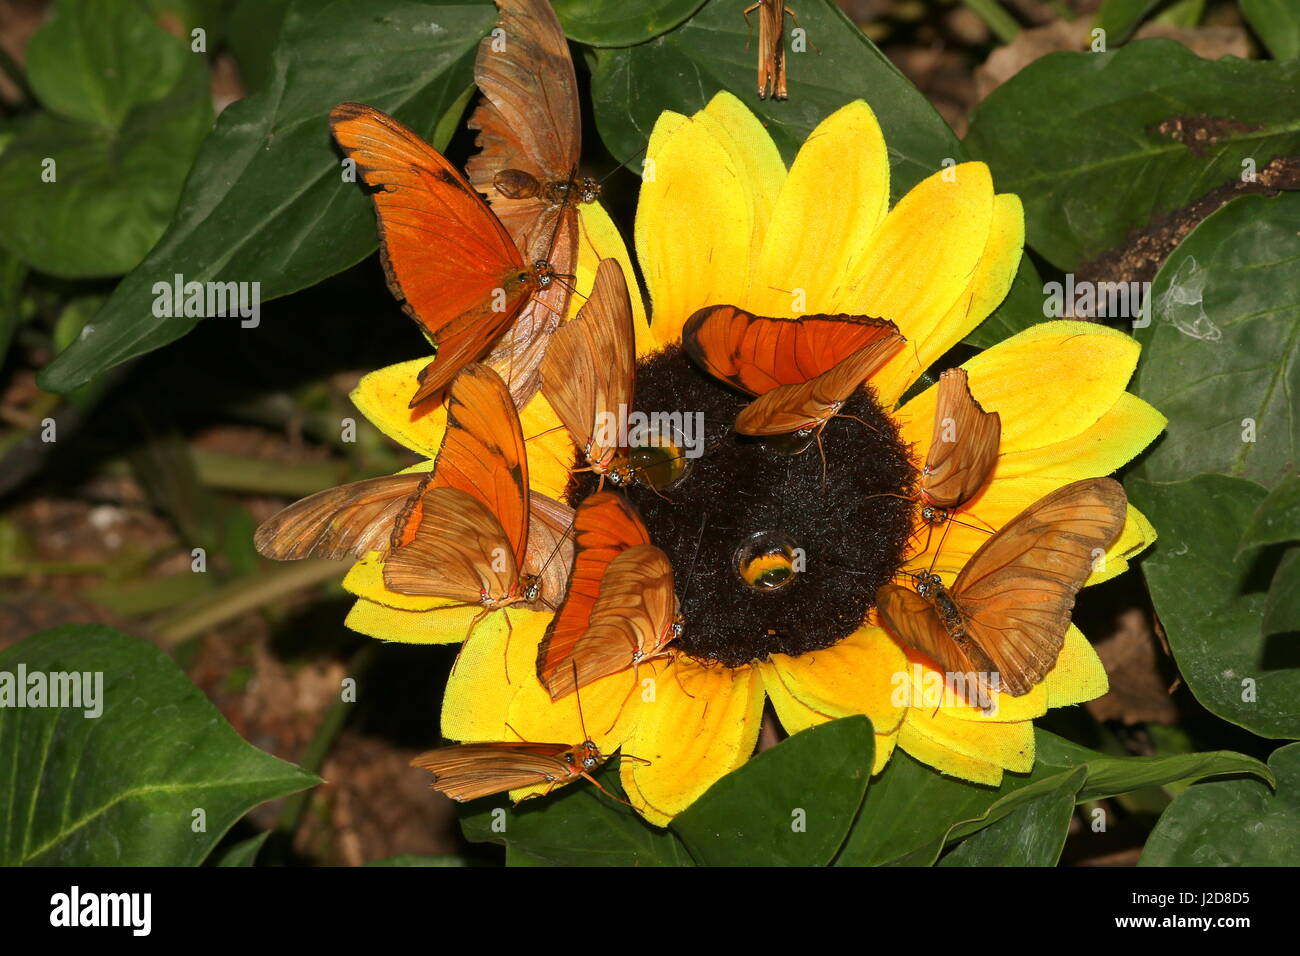 Lotes de naranja Julia Julia Heliconian Longwings o mariposas (Dryas iulia) alimentándose de una flor artificial en un zoológico de mariposa Foto de stock